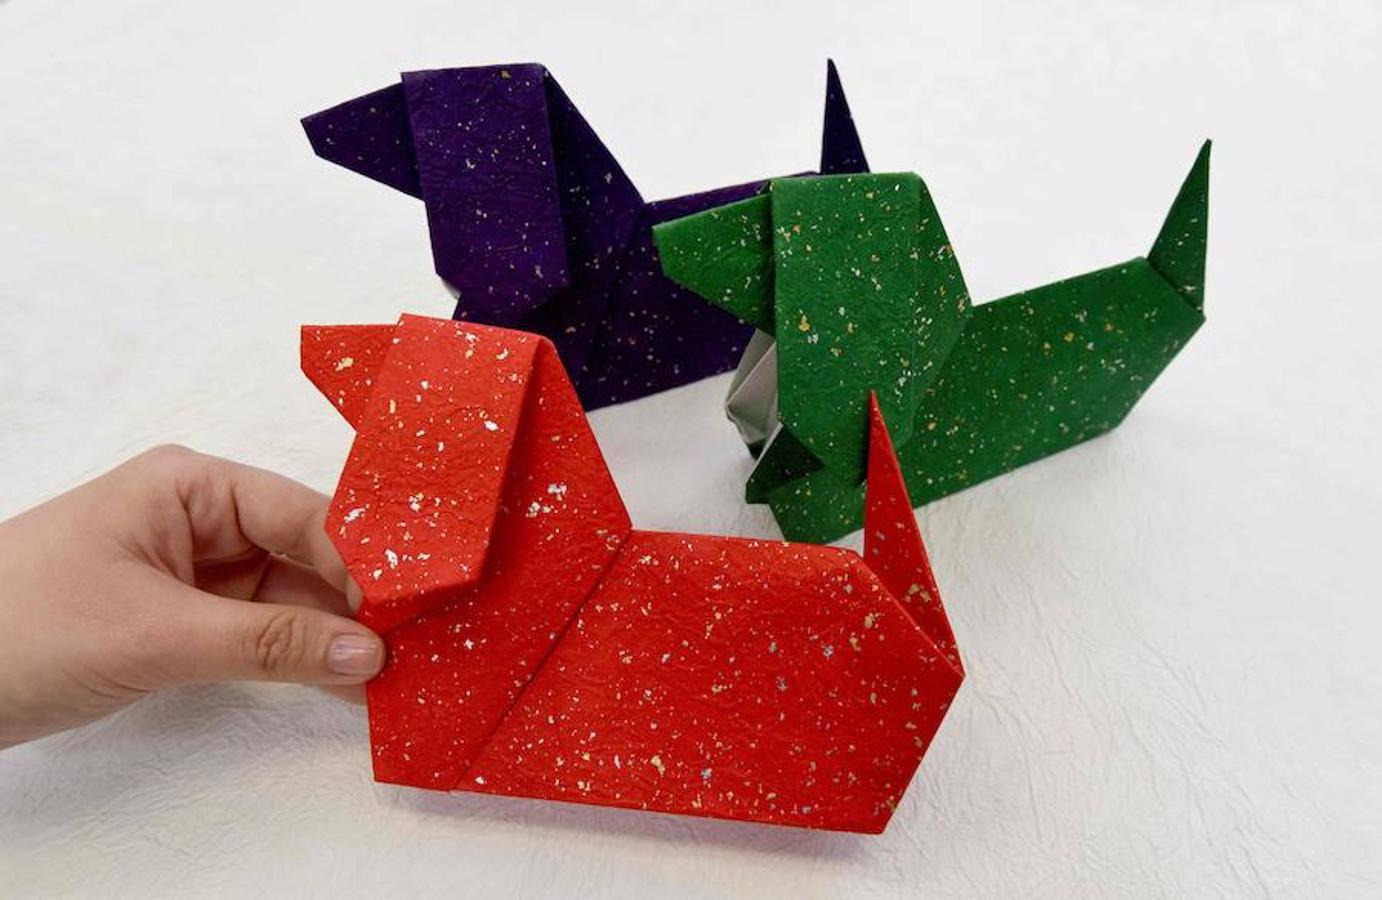 La papiroflexia o origami es el arte Japonés por excelencia, y la galería Origami Kaikan se centra exclusivamente a él. Este centro de exposiciones y taller de la papiroflexia es de entrada gratuita y dispone de una galería, tienda y clases de origami. Si alguien quiere asistir a sus cursos deberá pagar por cada clase.